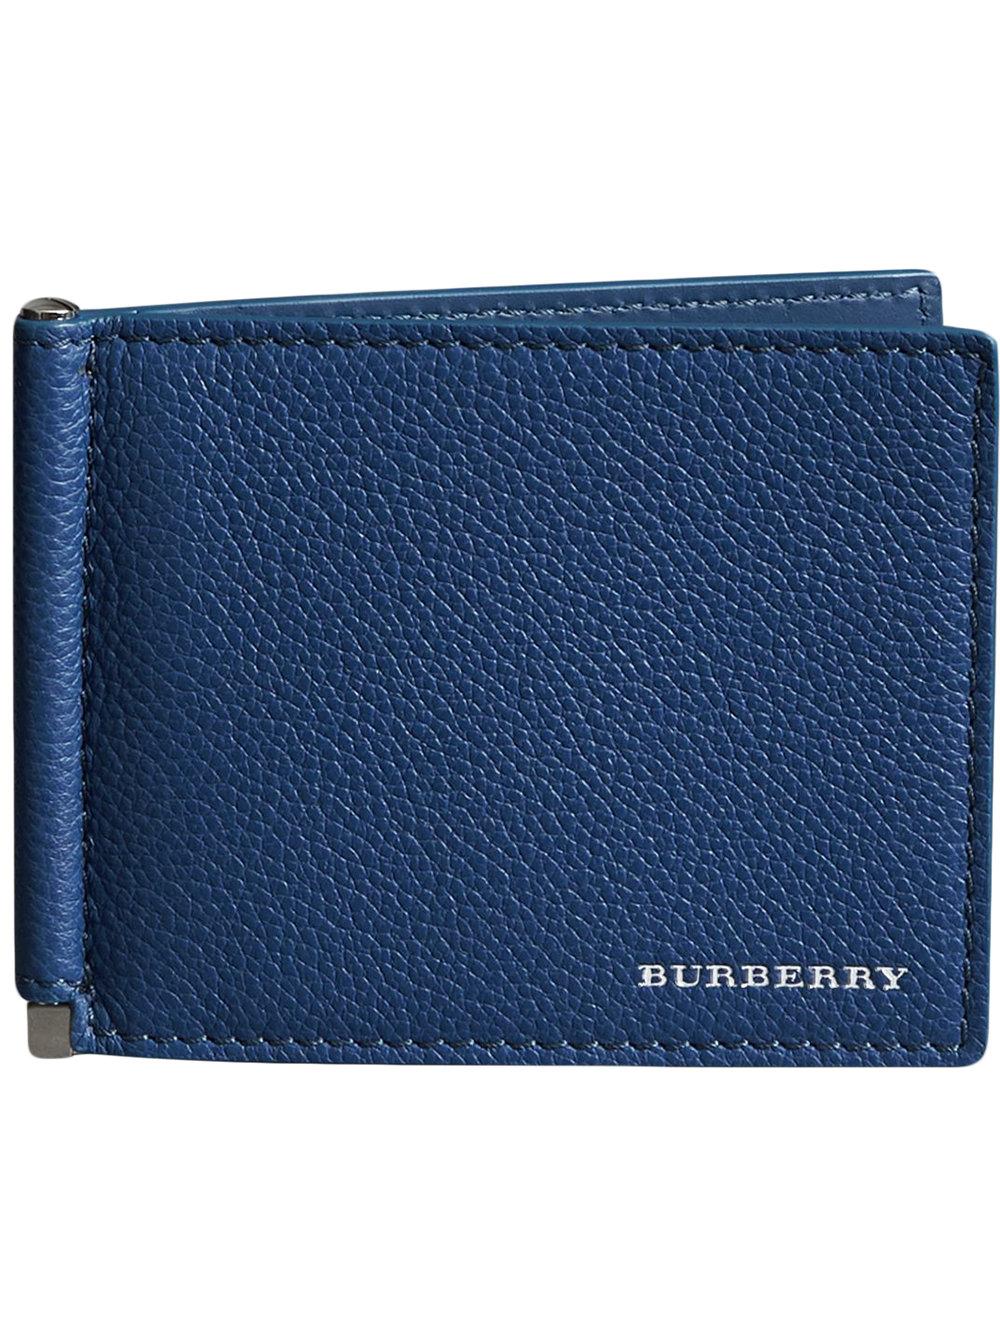 burberry purse blue